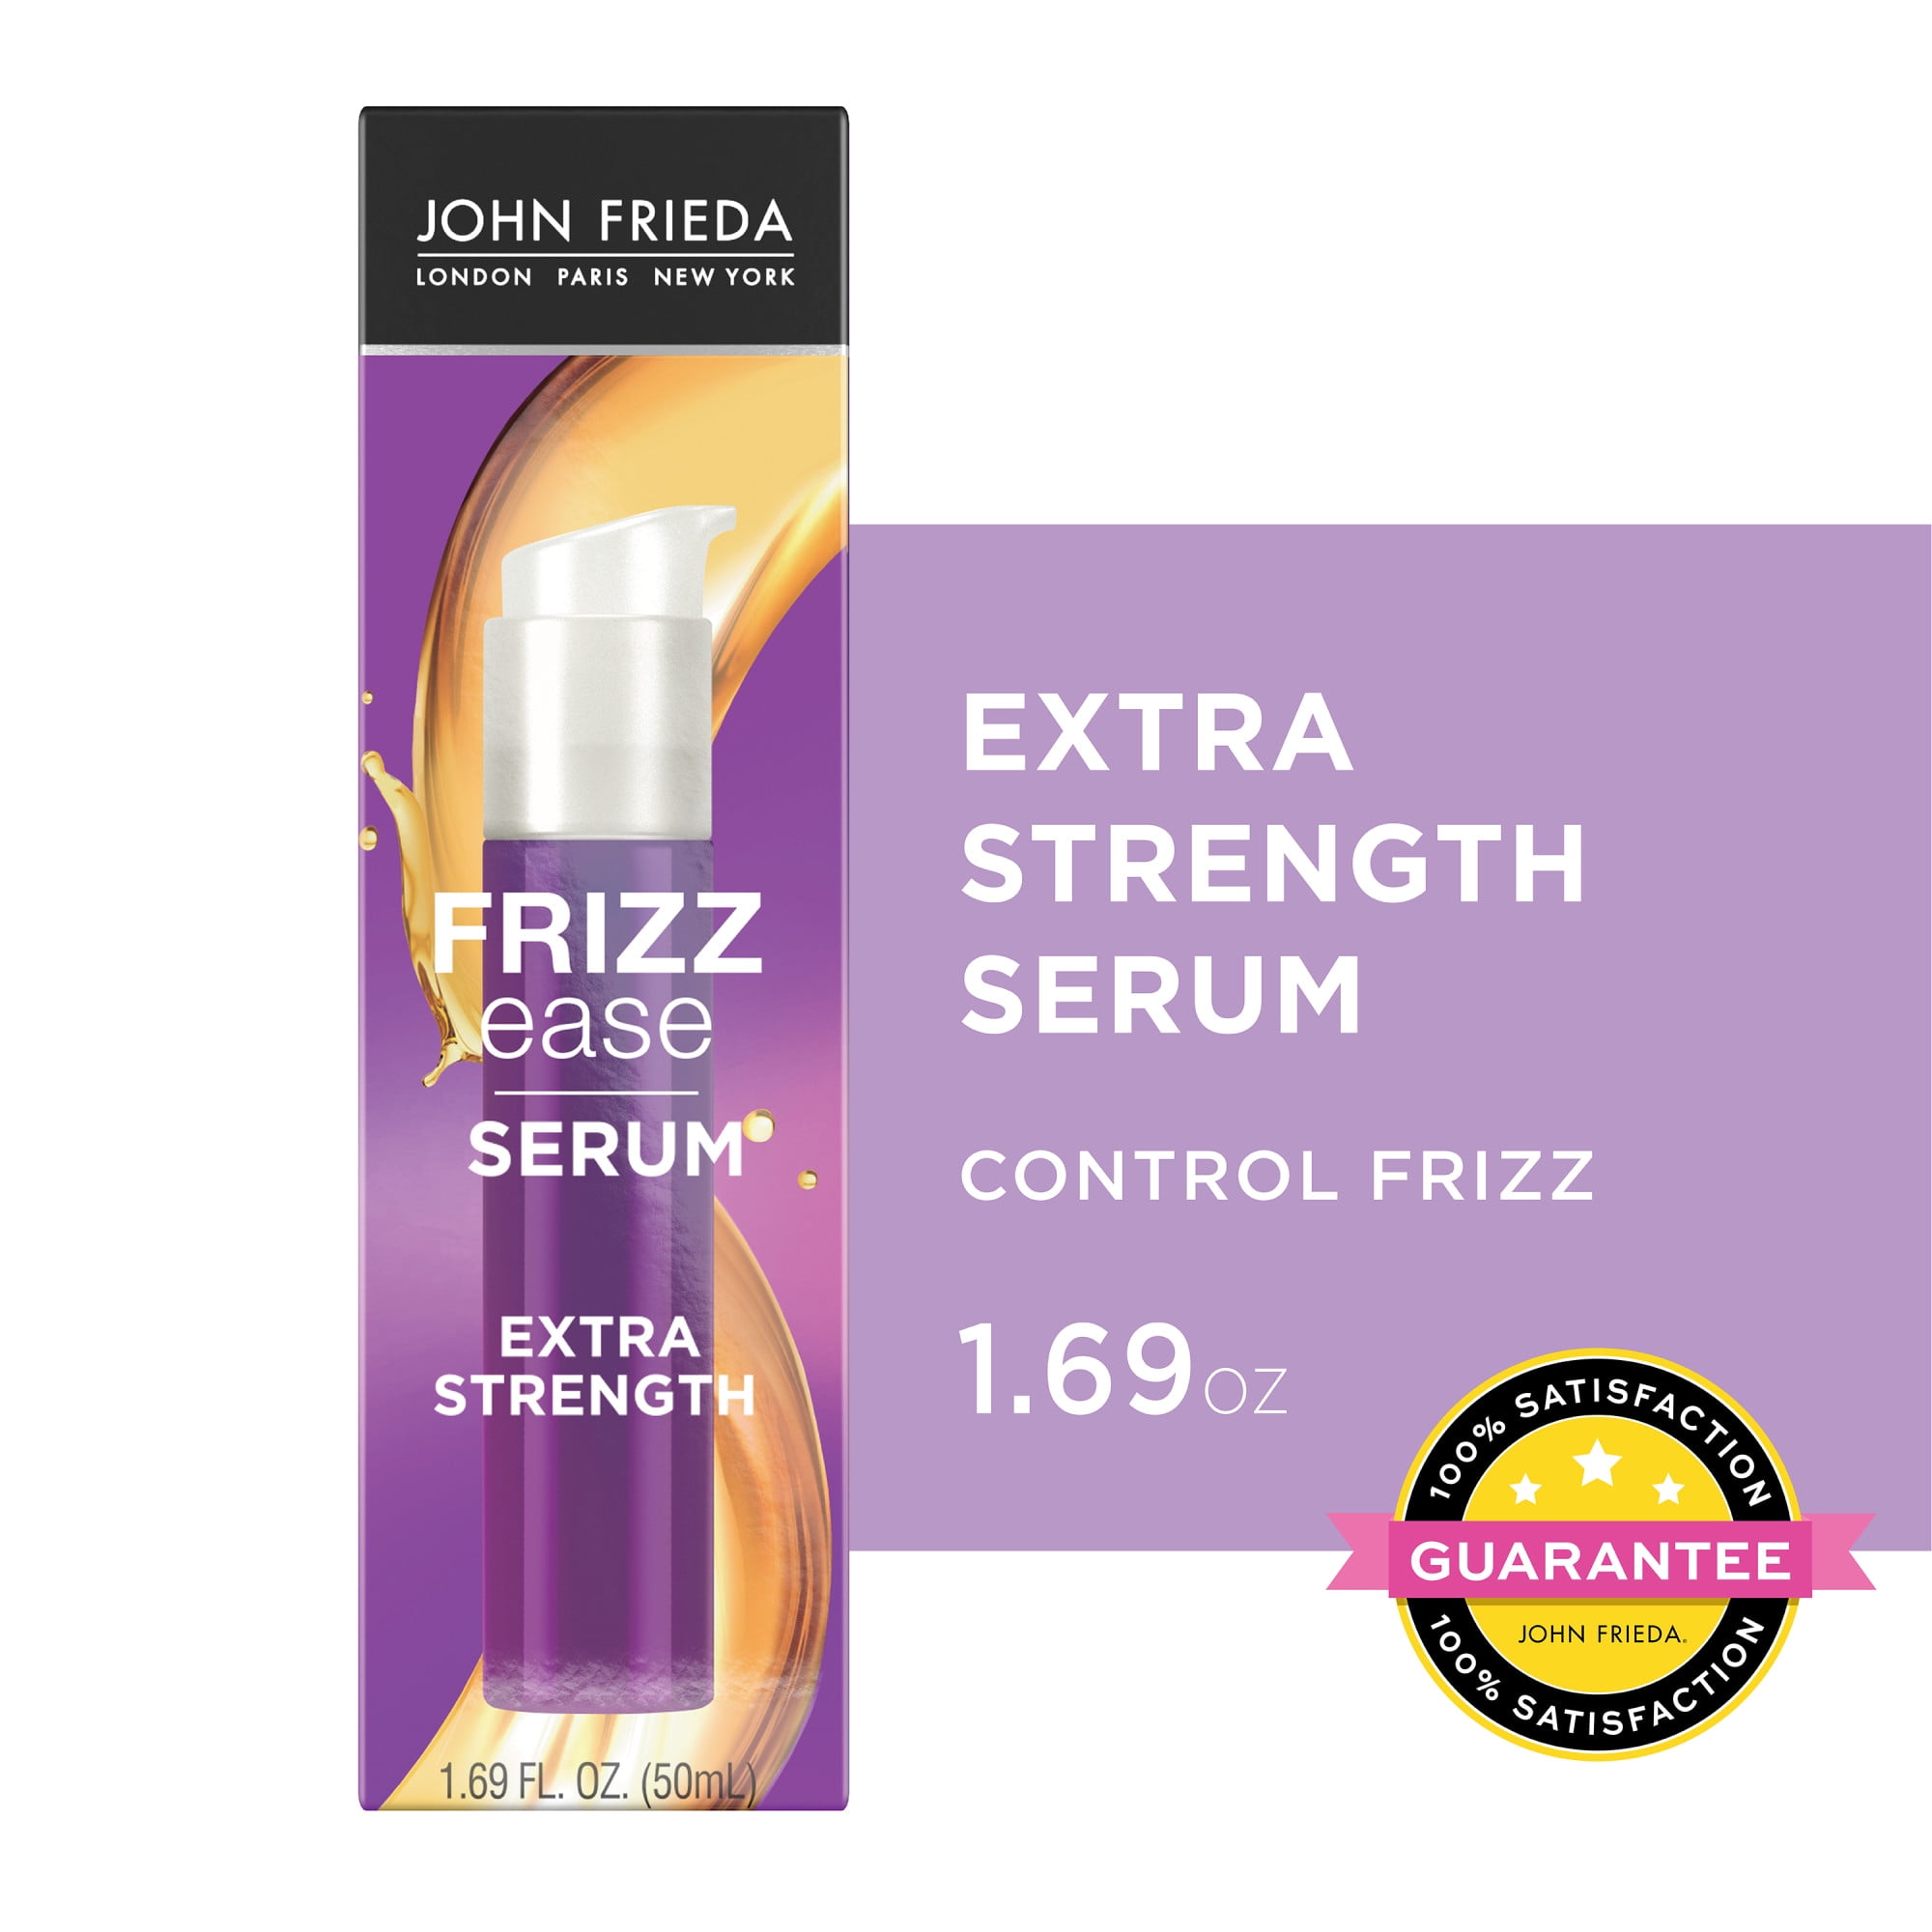 John Frieda Anti Frizz, Frizz Ease Frizz Extra Strength Hair Serum with Argan & Coconut Oil, Nourishing Hair Oil for Frizz Control, 1.69 fl oz